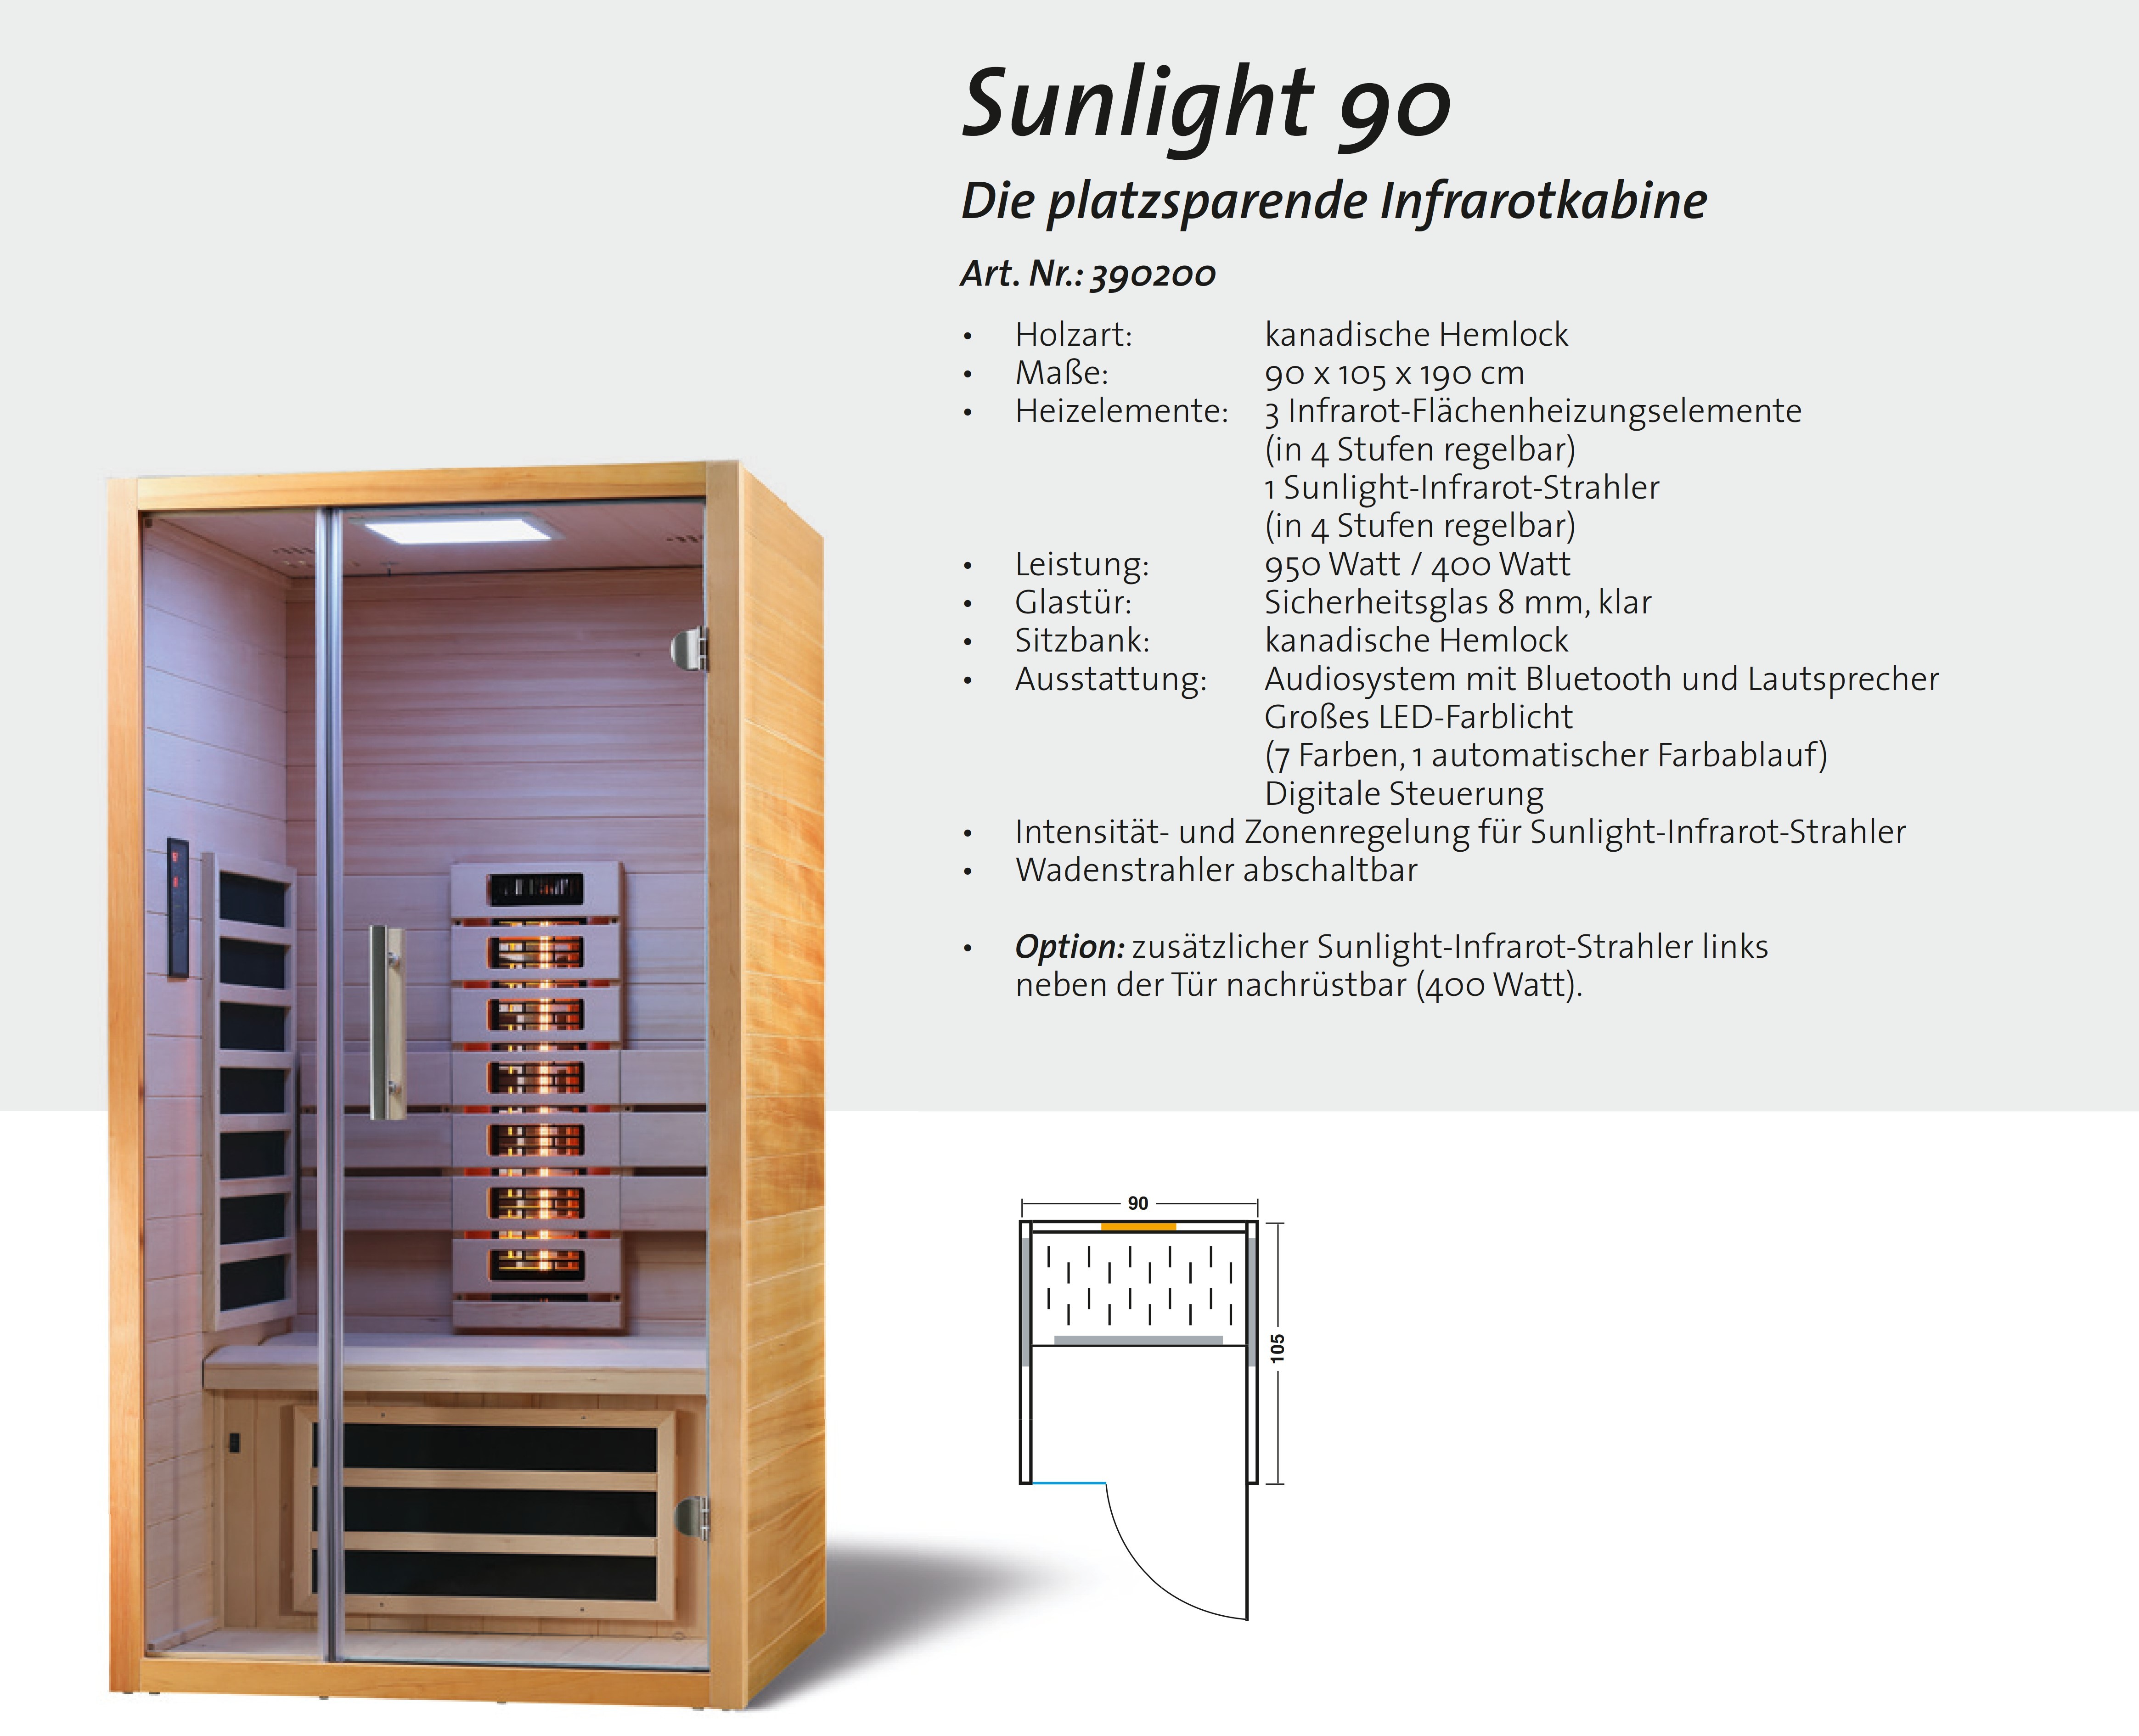 Sunlight90-Infrarot